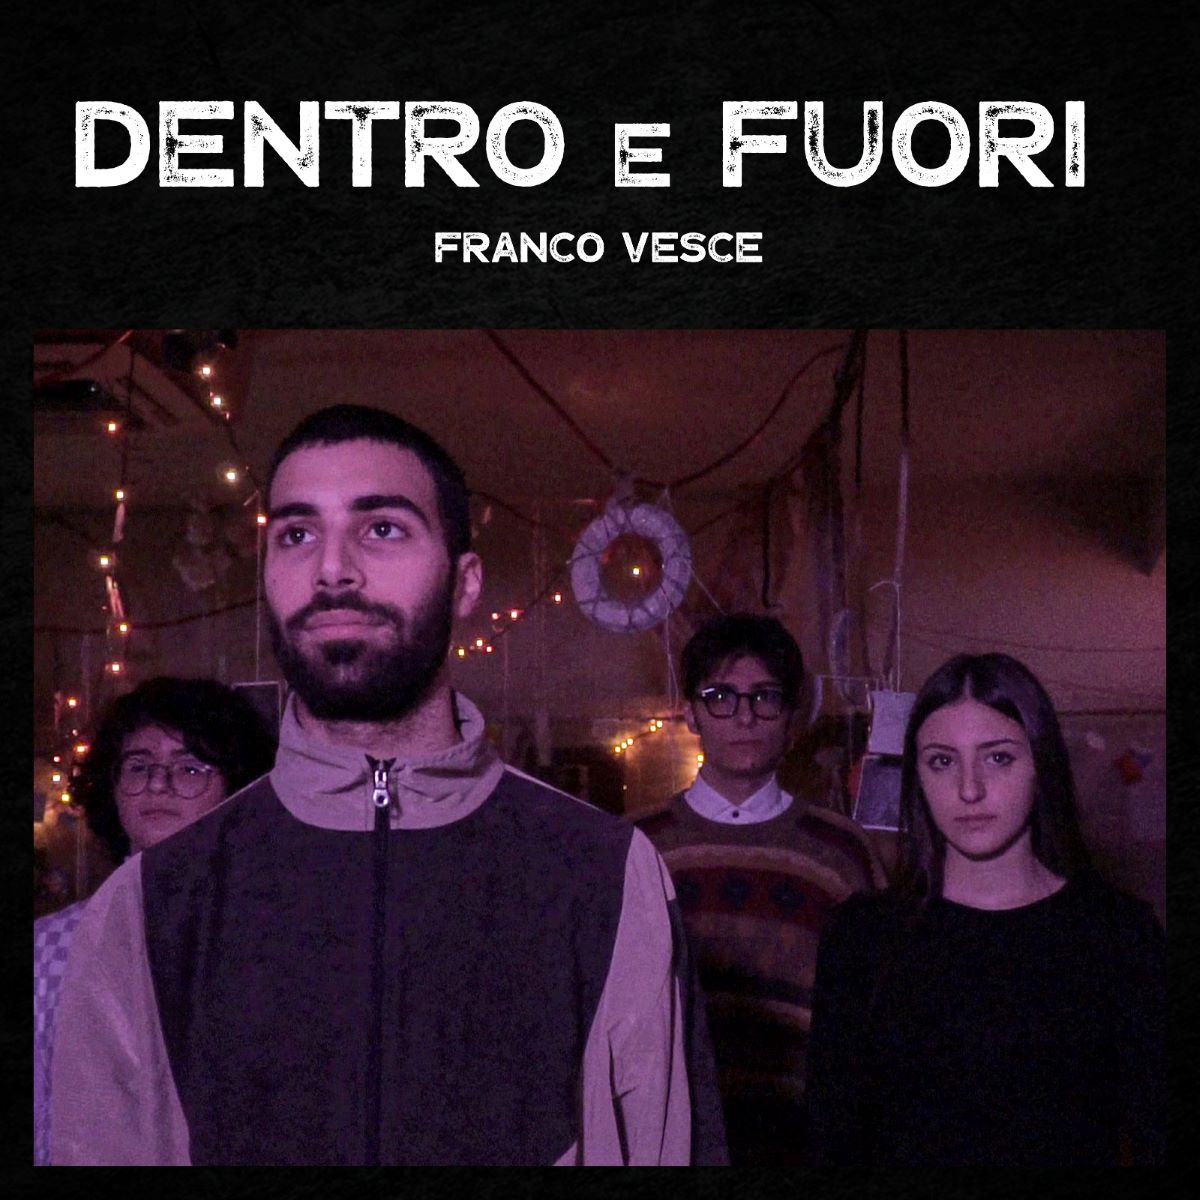 Franco Vesce - “Dentro e fuori”